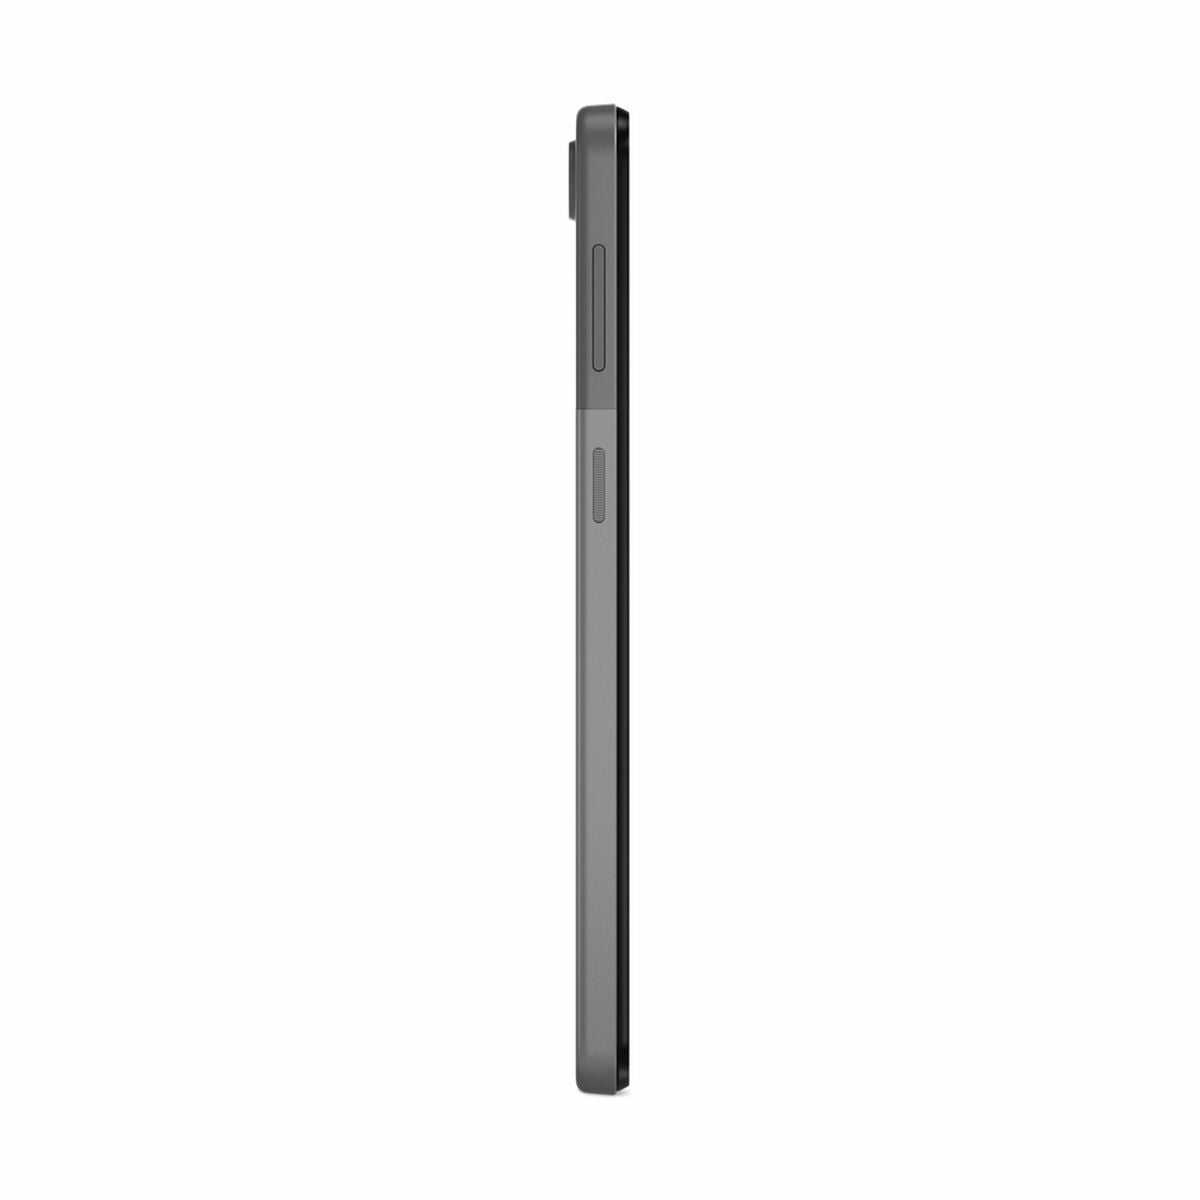 Tablet Lenovo M10 Unisoc 4 GB RAM 64 GB Grau